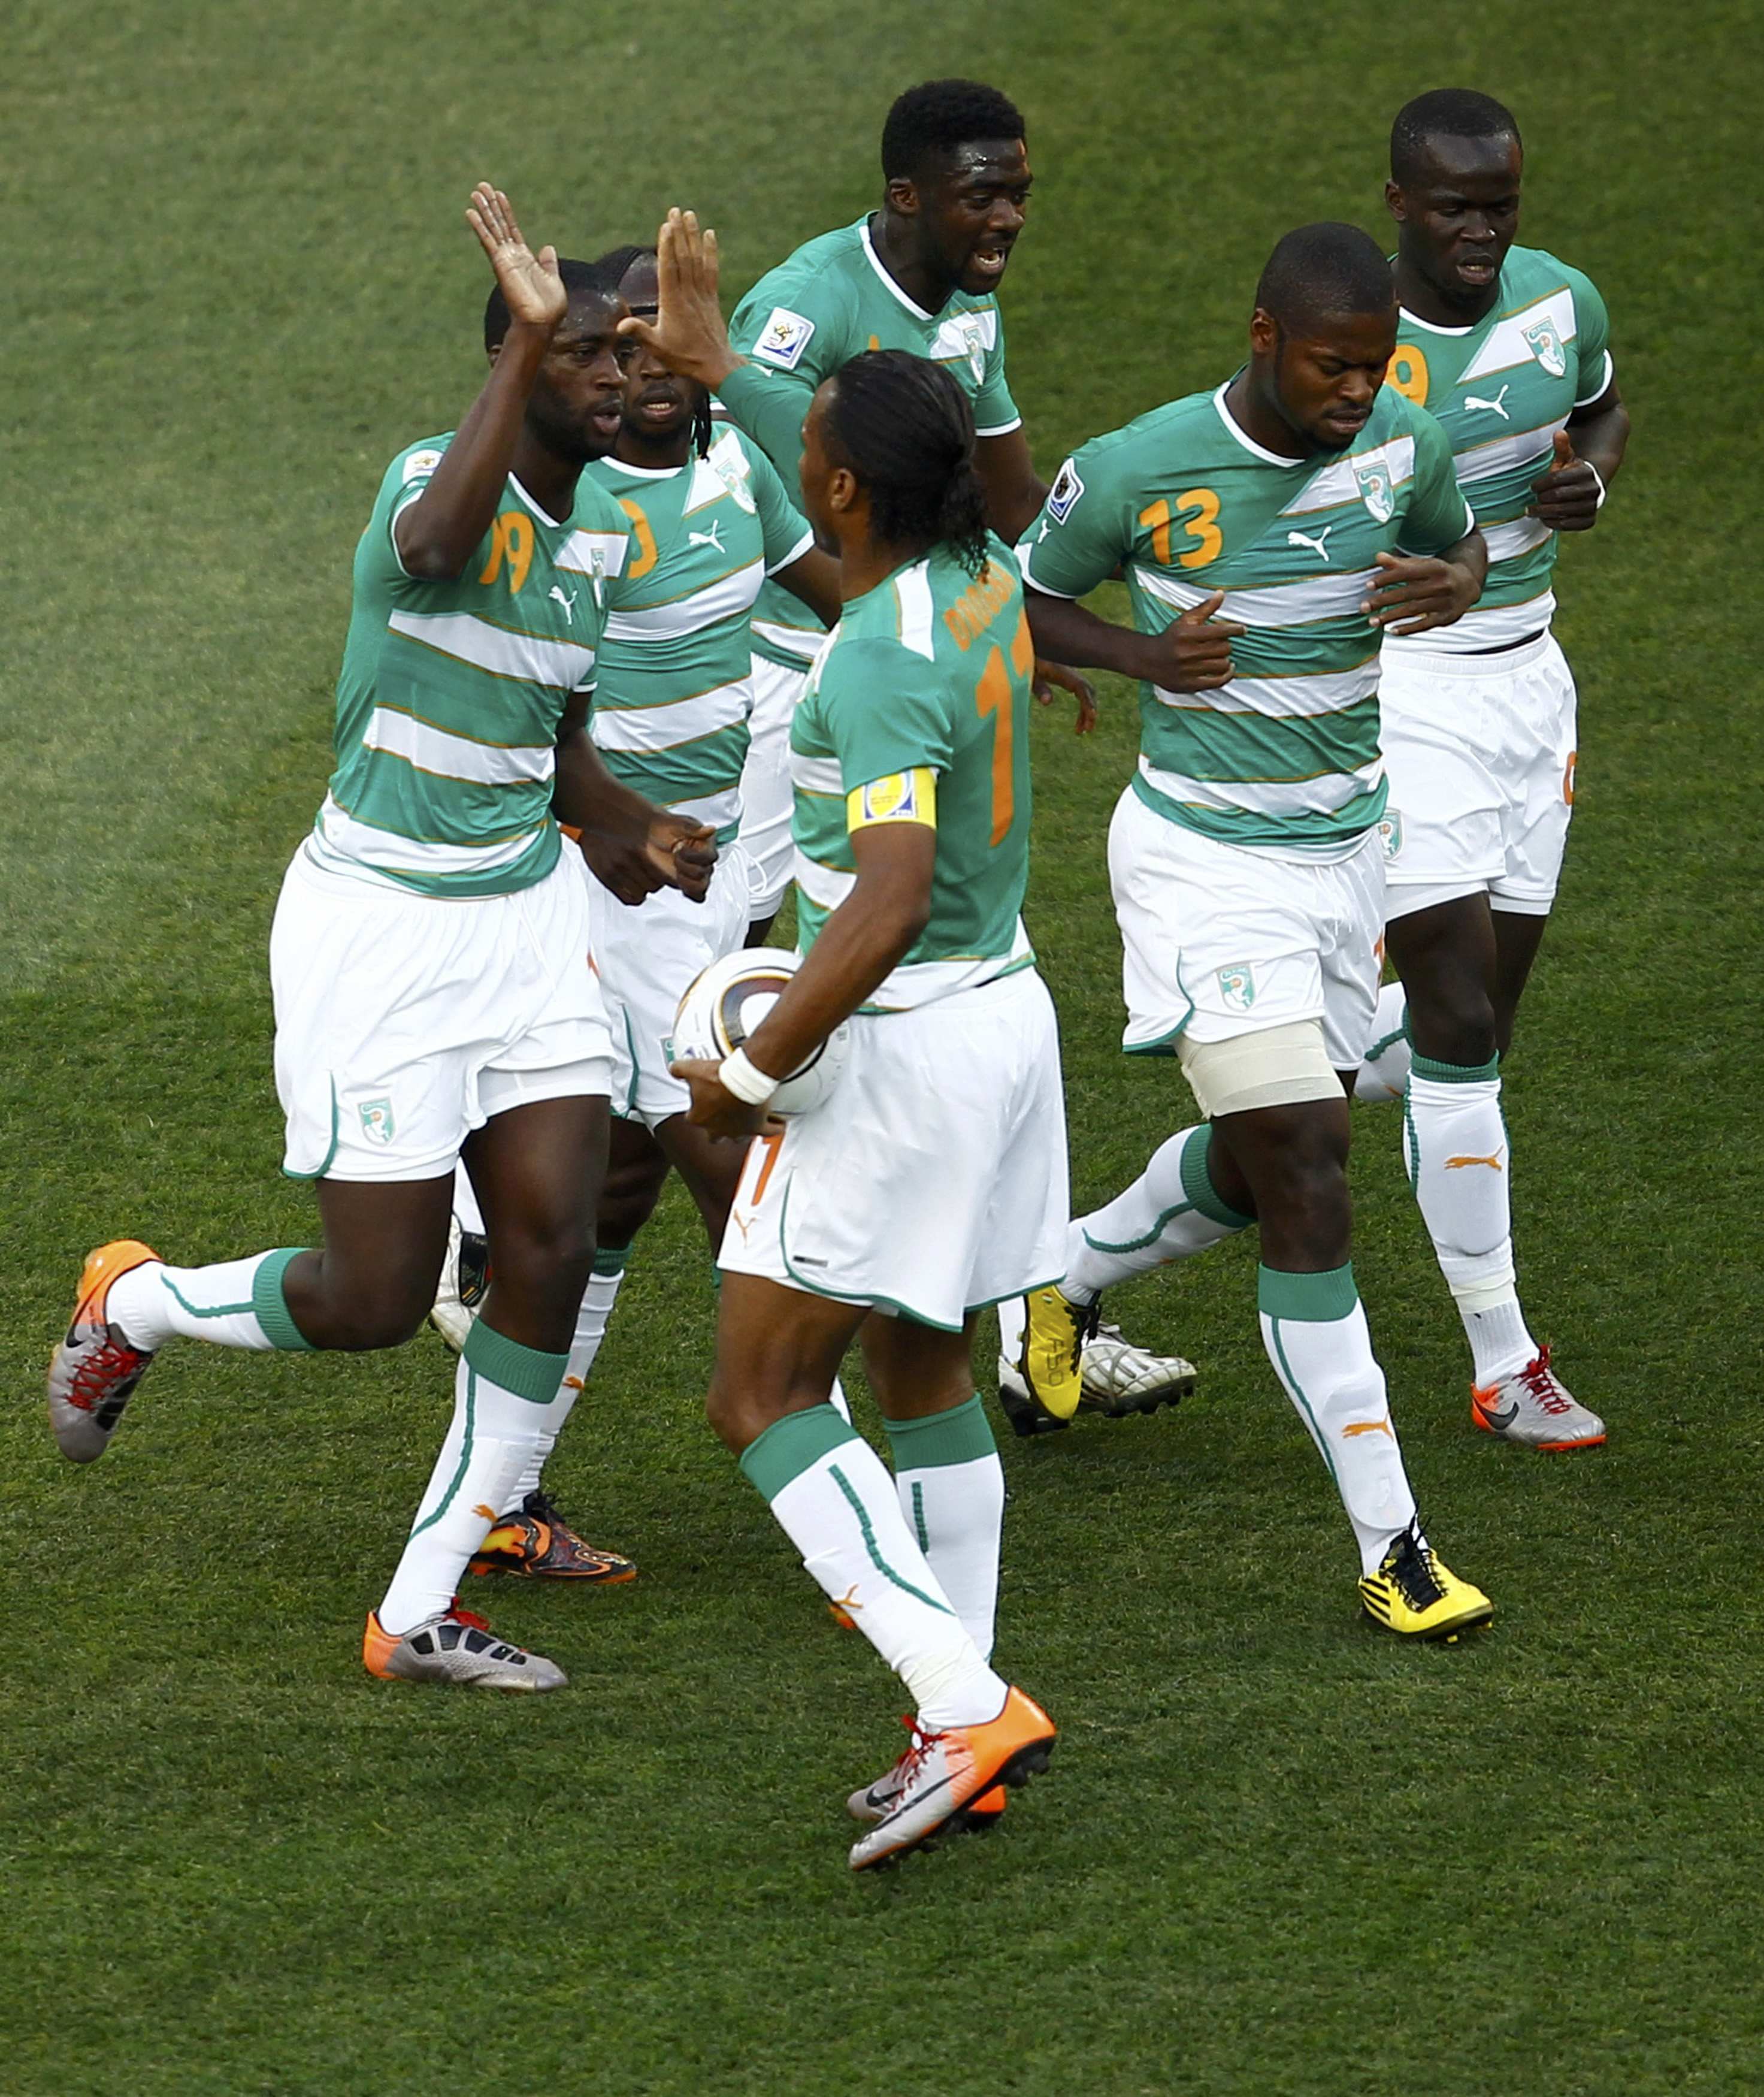 Οι παίκτες της Ακτής Ελεφαντοστού πανηγυρίζουν το πρώτο γκολ που σημείωσαν